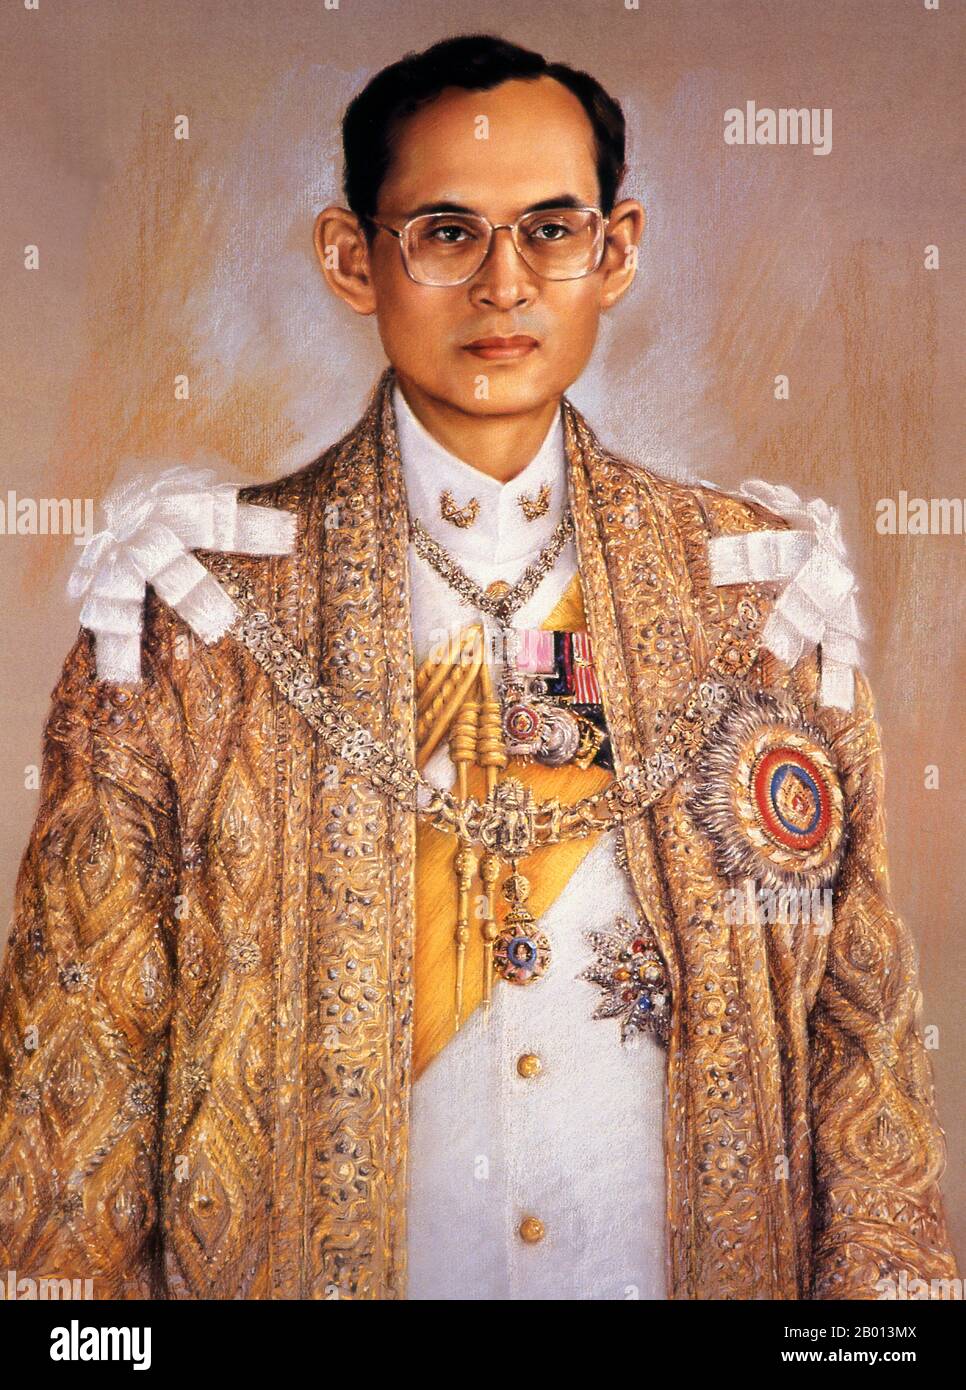 Thailandia: Re Rama IX, Bhumibol Adulyadej (5 dicembre 1927 – 13 ottobre 2016), nono monarca della dinastia Chakri. Olio su tela pittura, 20 ° secolo. Bhumibol Adulyadej (Phumiphon Adunyadet) è stato il nono re della Thailandia. Era conosciuto come Rama IX, e all'interno della famiglia reale thailandese e per chiudere gli associati semplicemente come Lek. Regnò dal 9 giugno 1946, fu uno dei capi di stato più longevi al mondo e il monarca più longevo della storia tailandese. Foto Stock